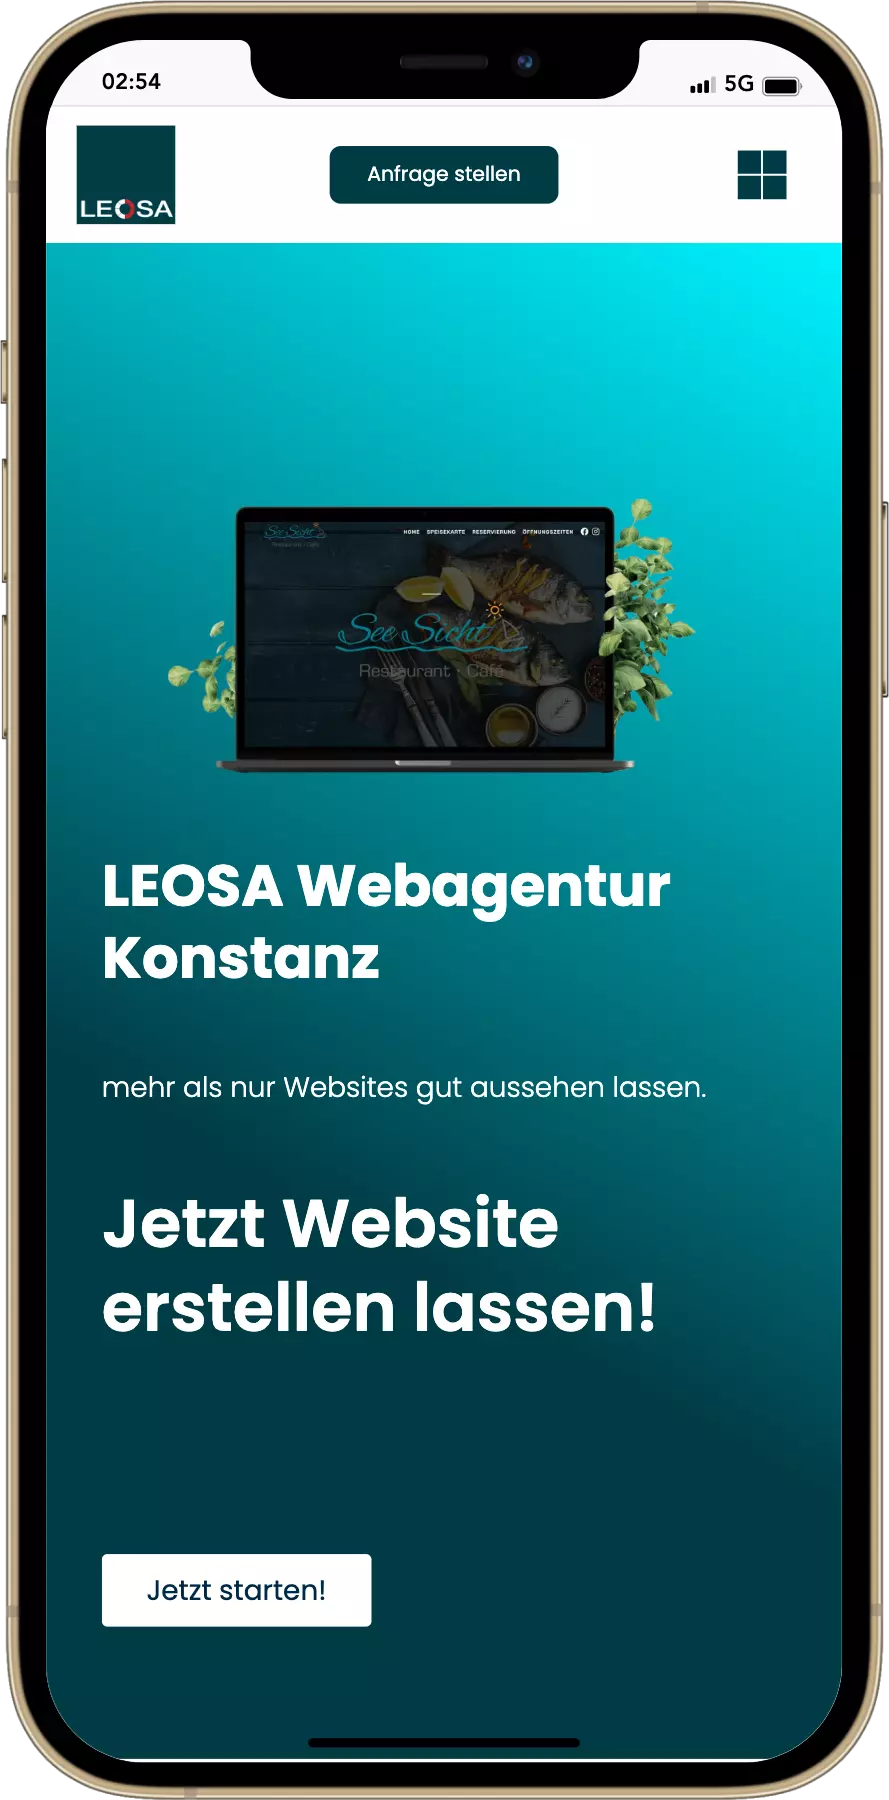 Responses Webdesign​. Webagentur Konstanz